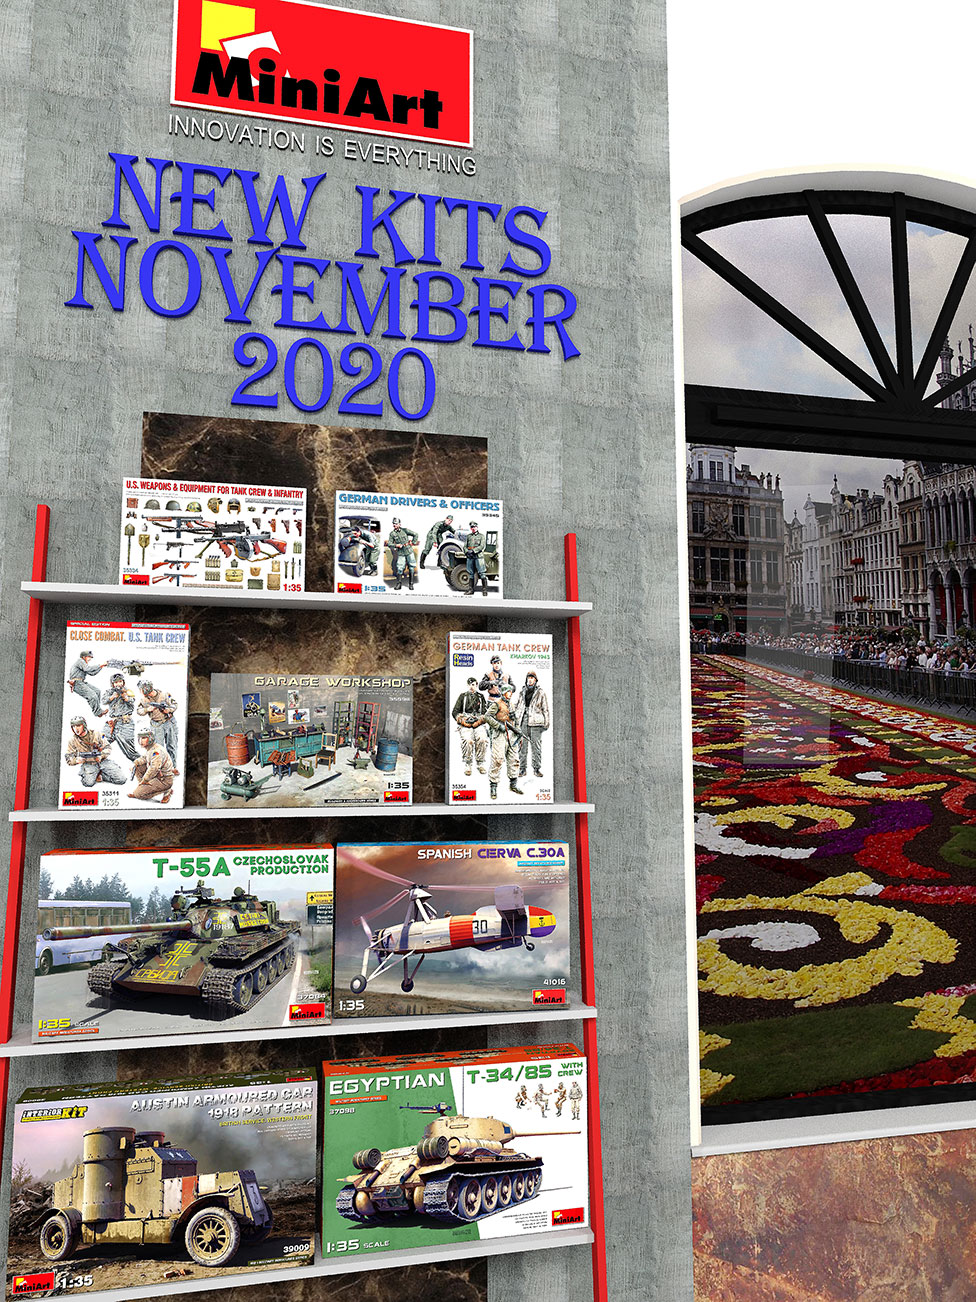 New-Kits-Available-November-2020.jpg